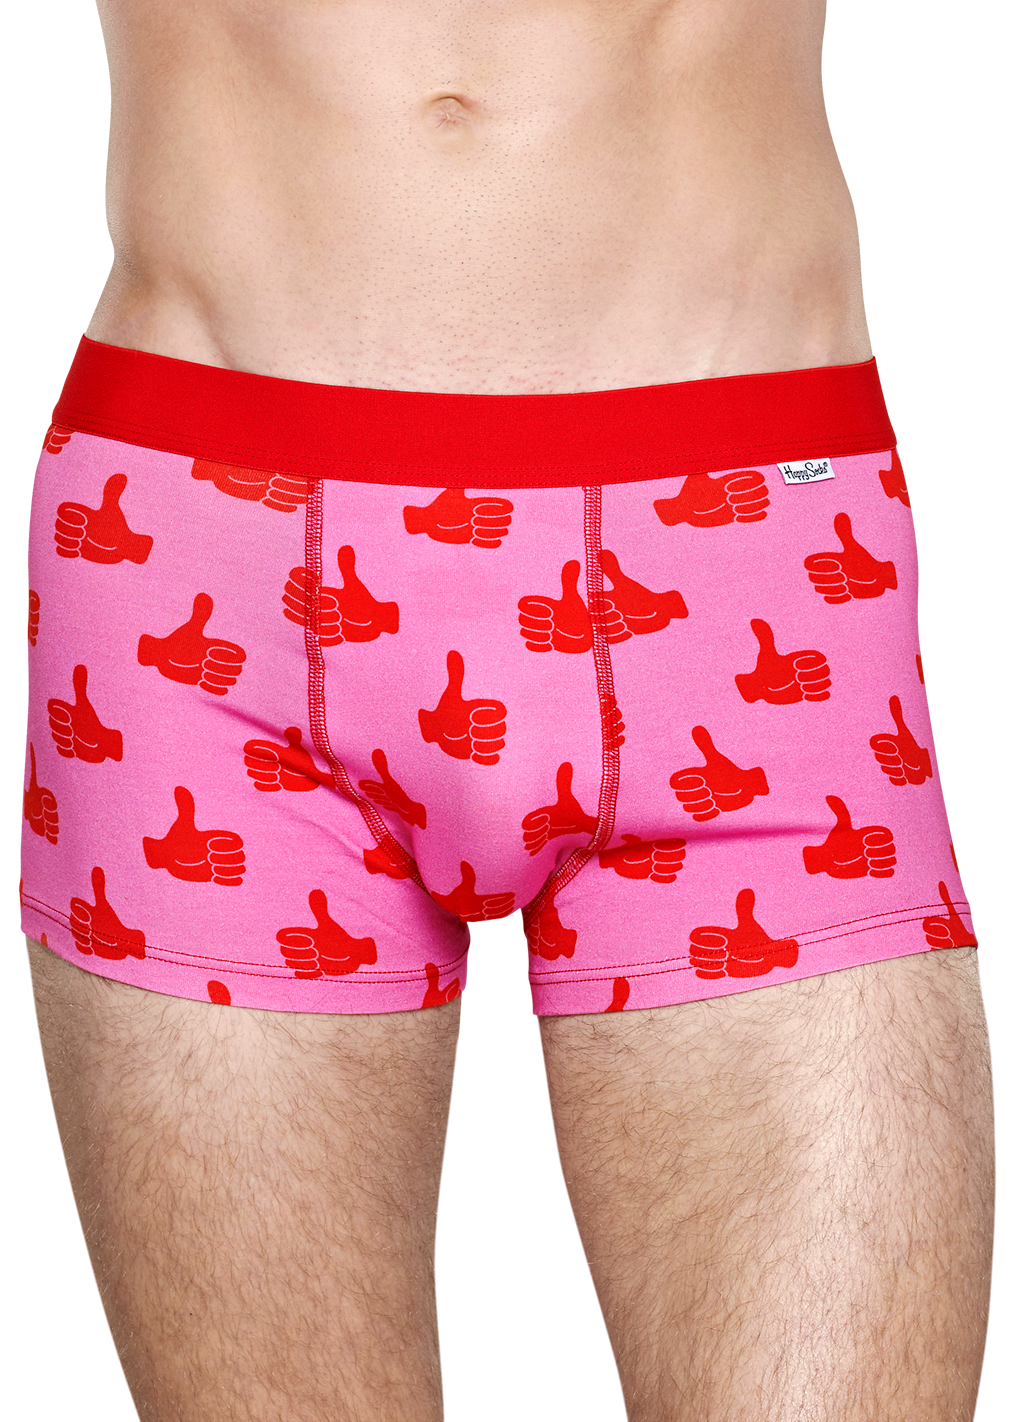 ga zo door Zending Zich voorstellen Men's Underwear: Thumbs Up Trunk, Pink | Happy Socks GL